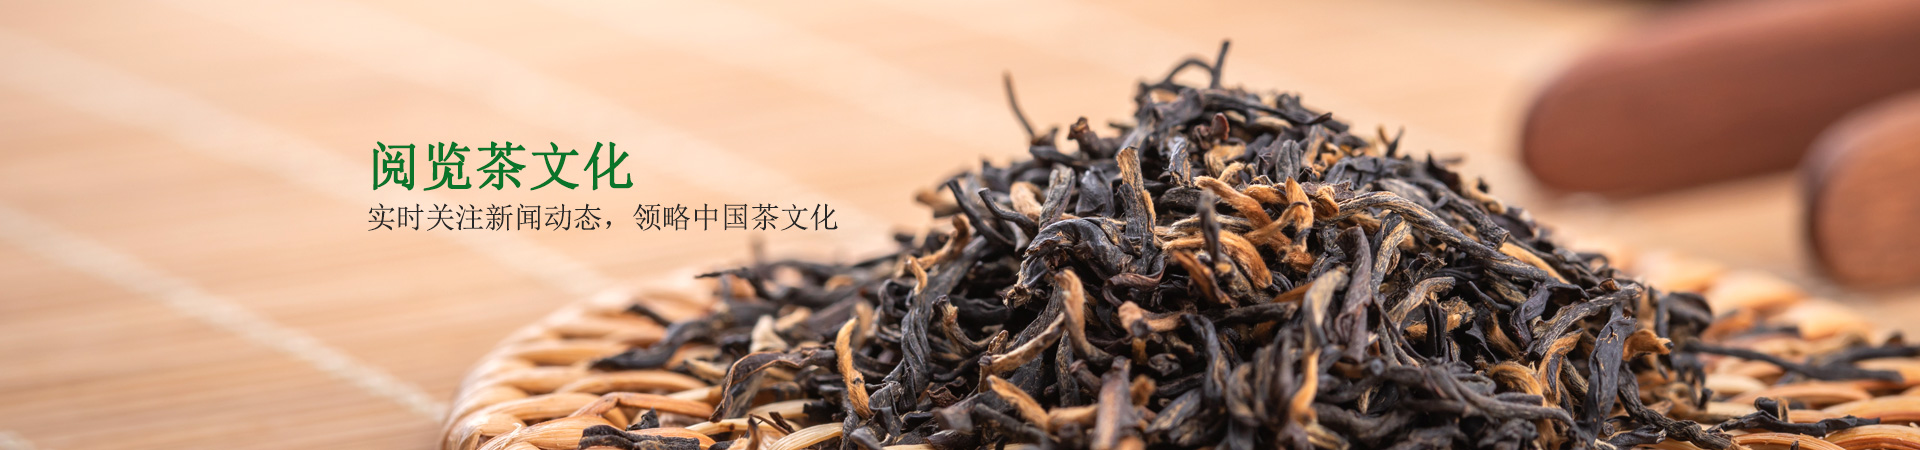 纳福礼-阅览茶文化             实时关注新闻动态，领略中国茶文化